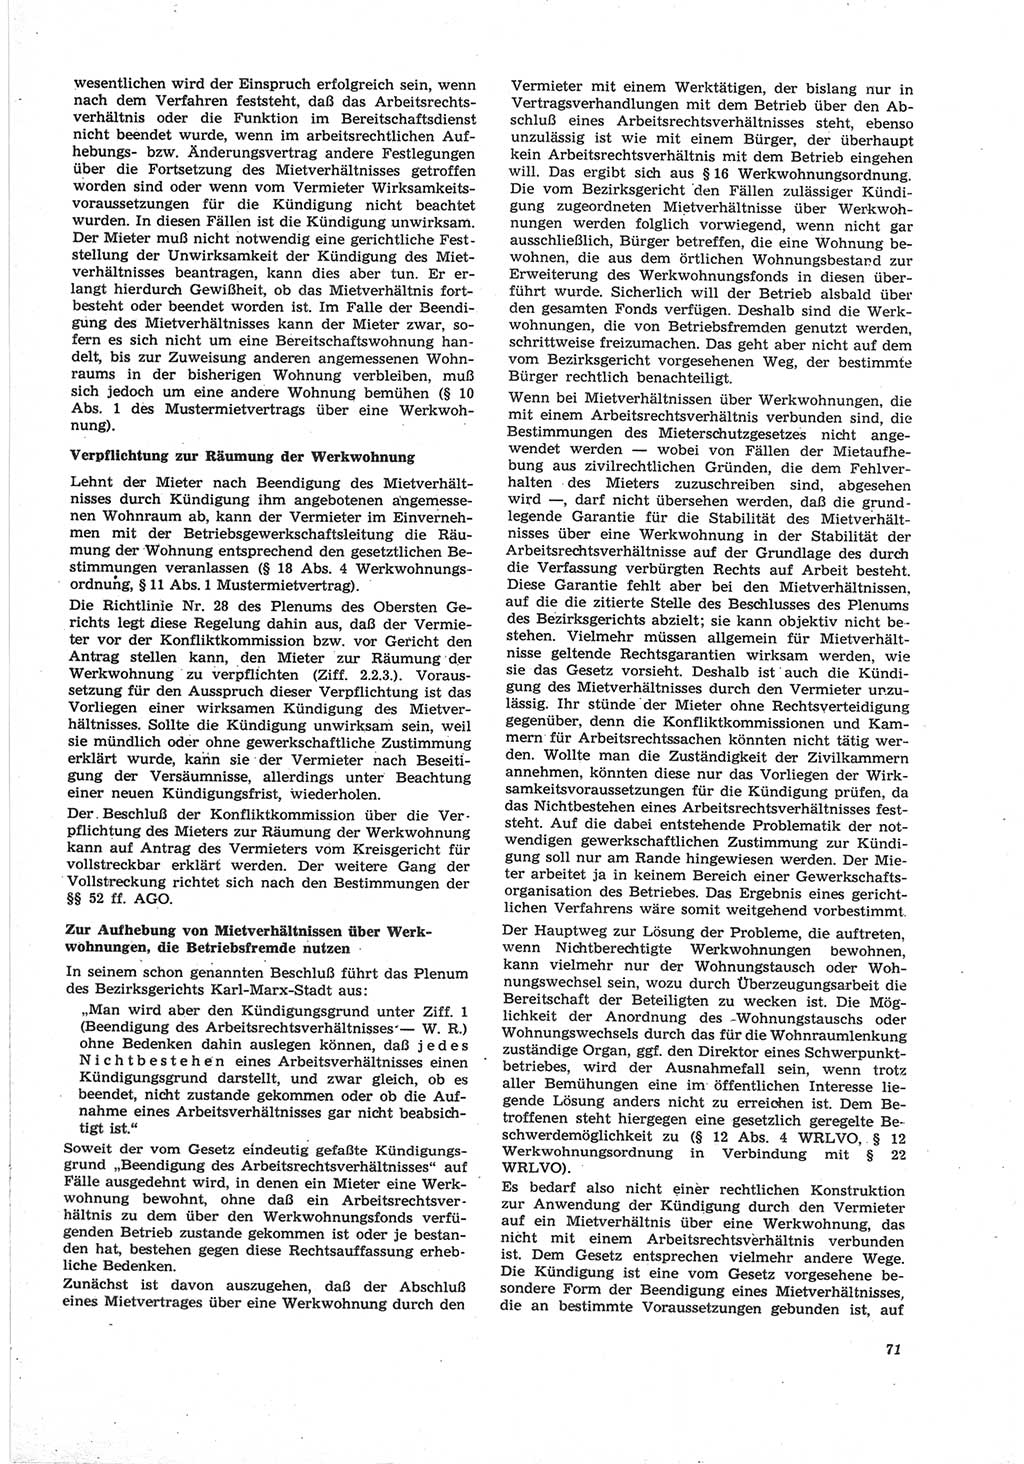 Neue Justiz (NJ), Zeitschrift für Recht und Rechtswissenschaft [Deutsche Demokratische Republik (DDR)], 25. Jahrgang 1971, Seite 71 (NJ DDR 1971, S. 71)